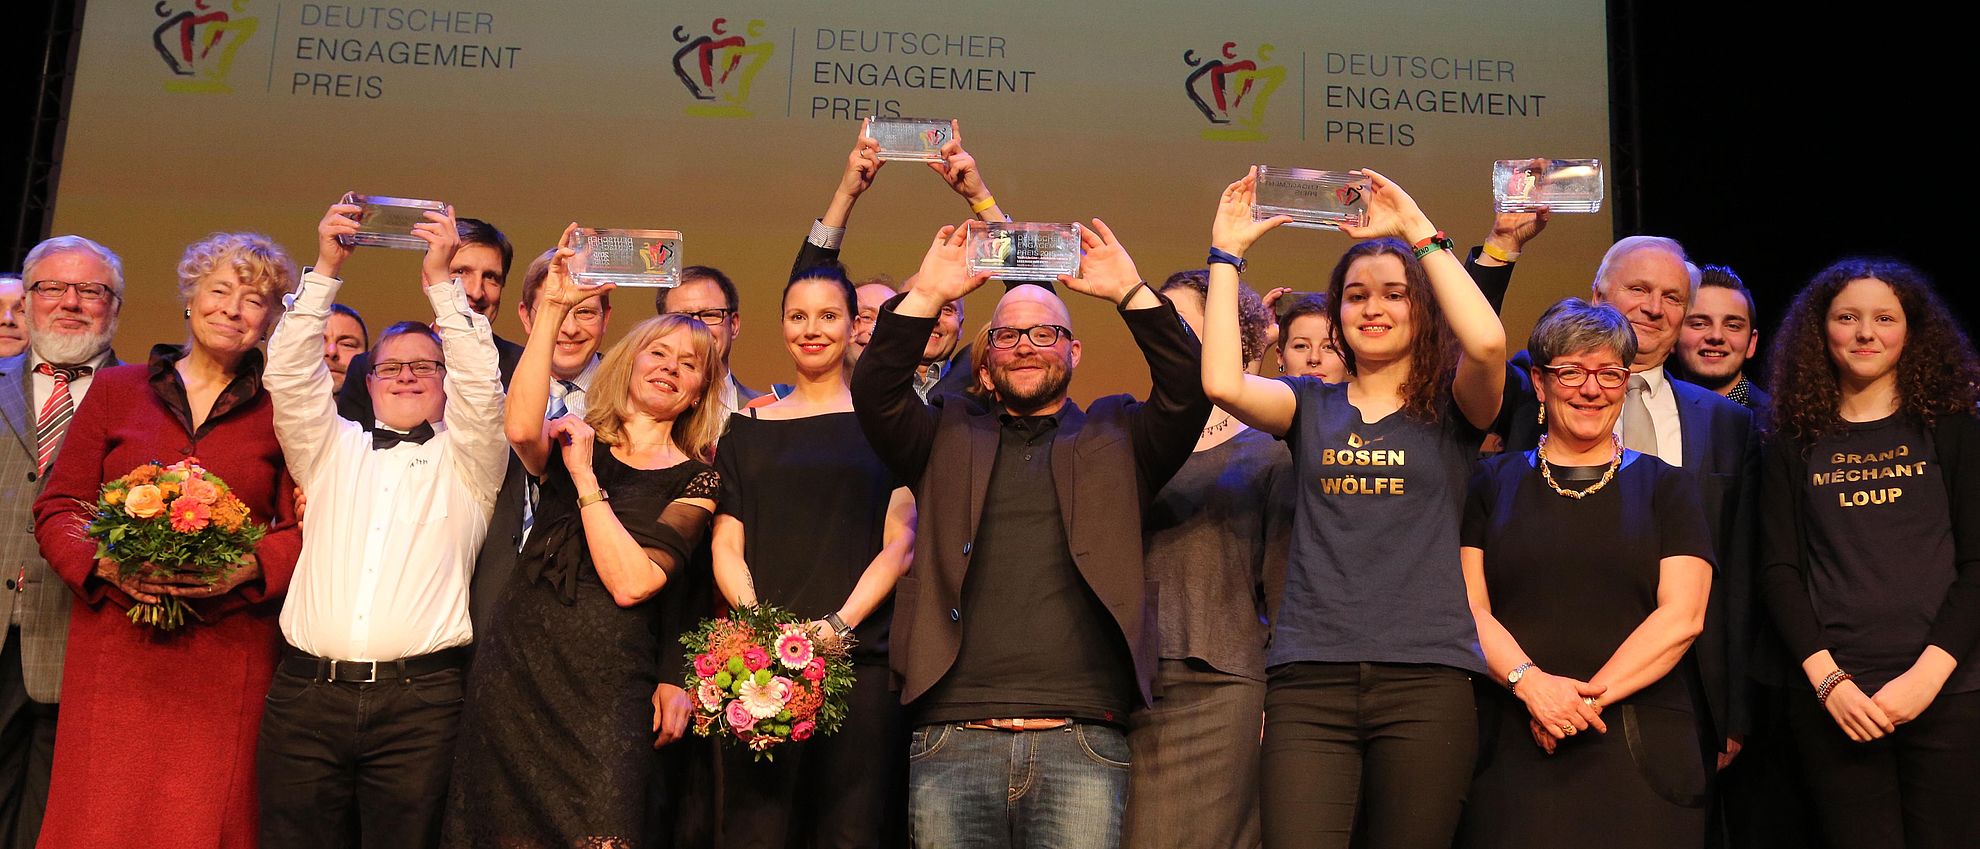 Gruppenbild der Preisträgerinnen und Preisträger des Deutschen Engagementpreises 2015